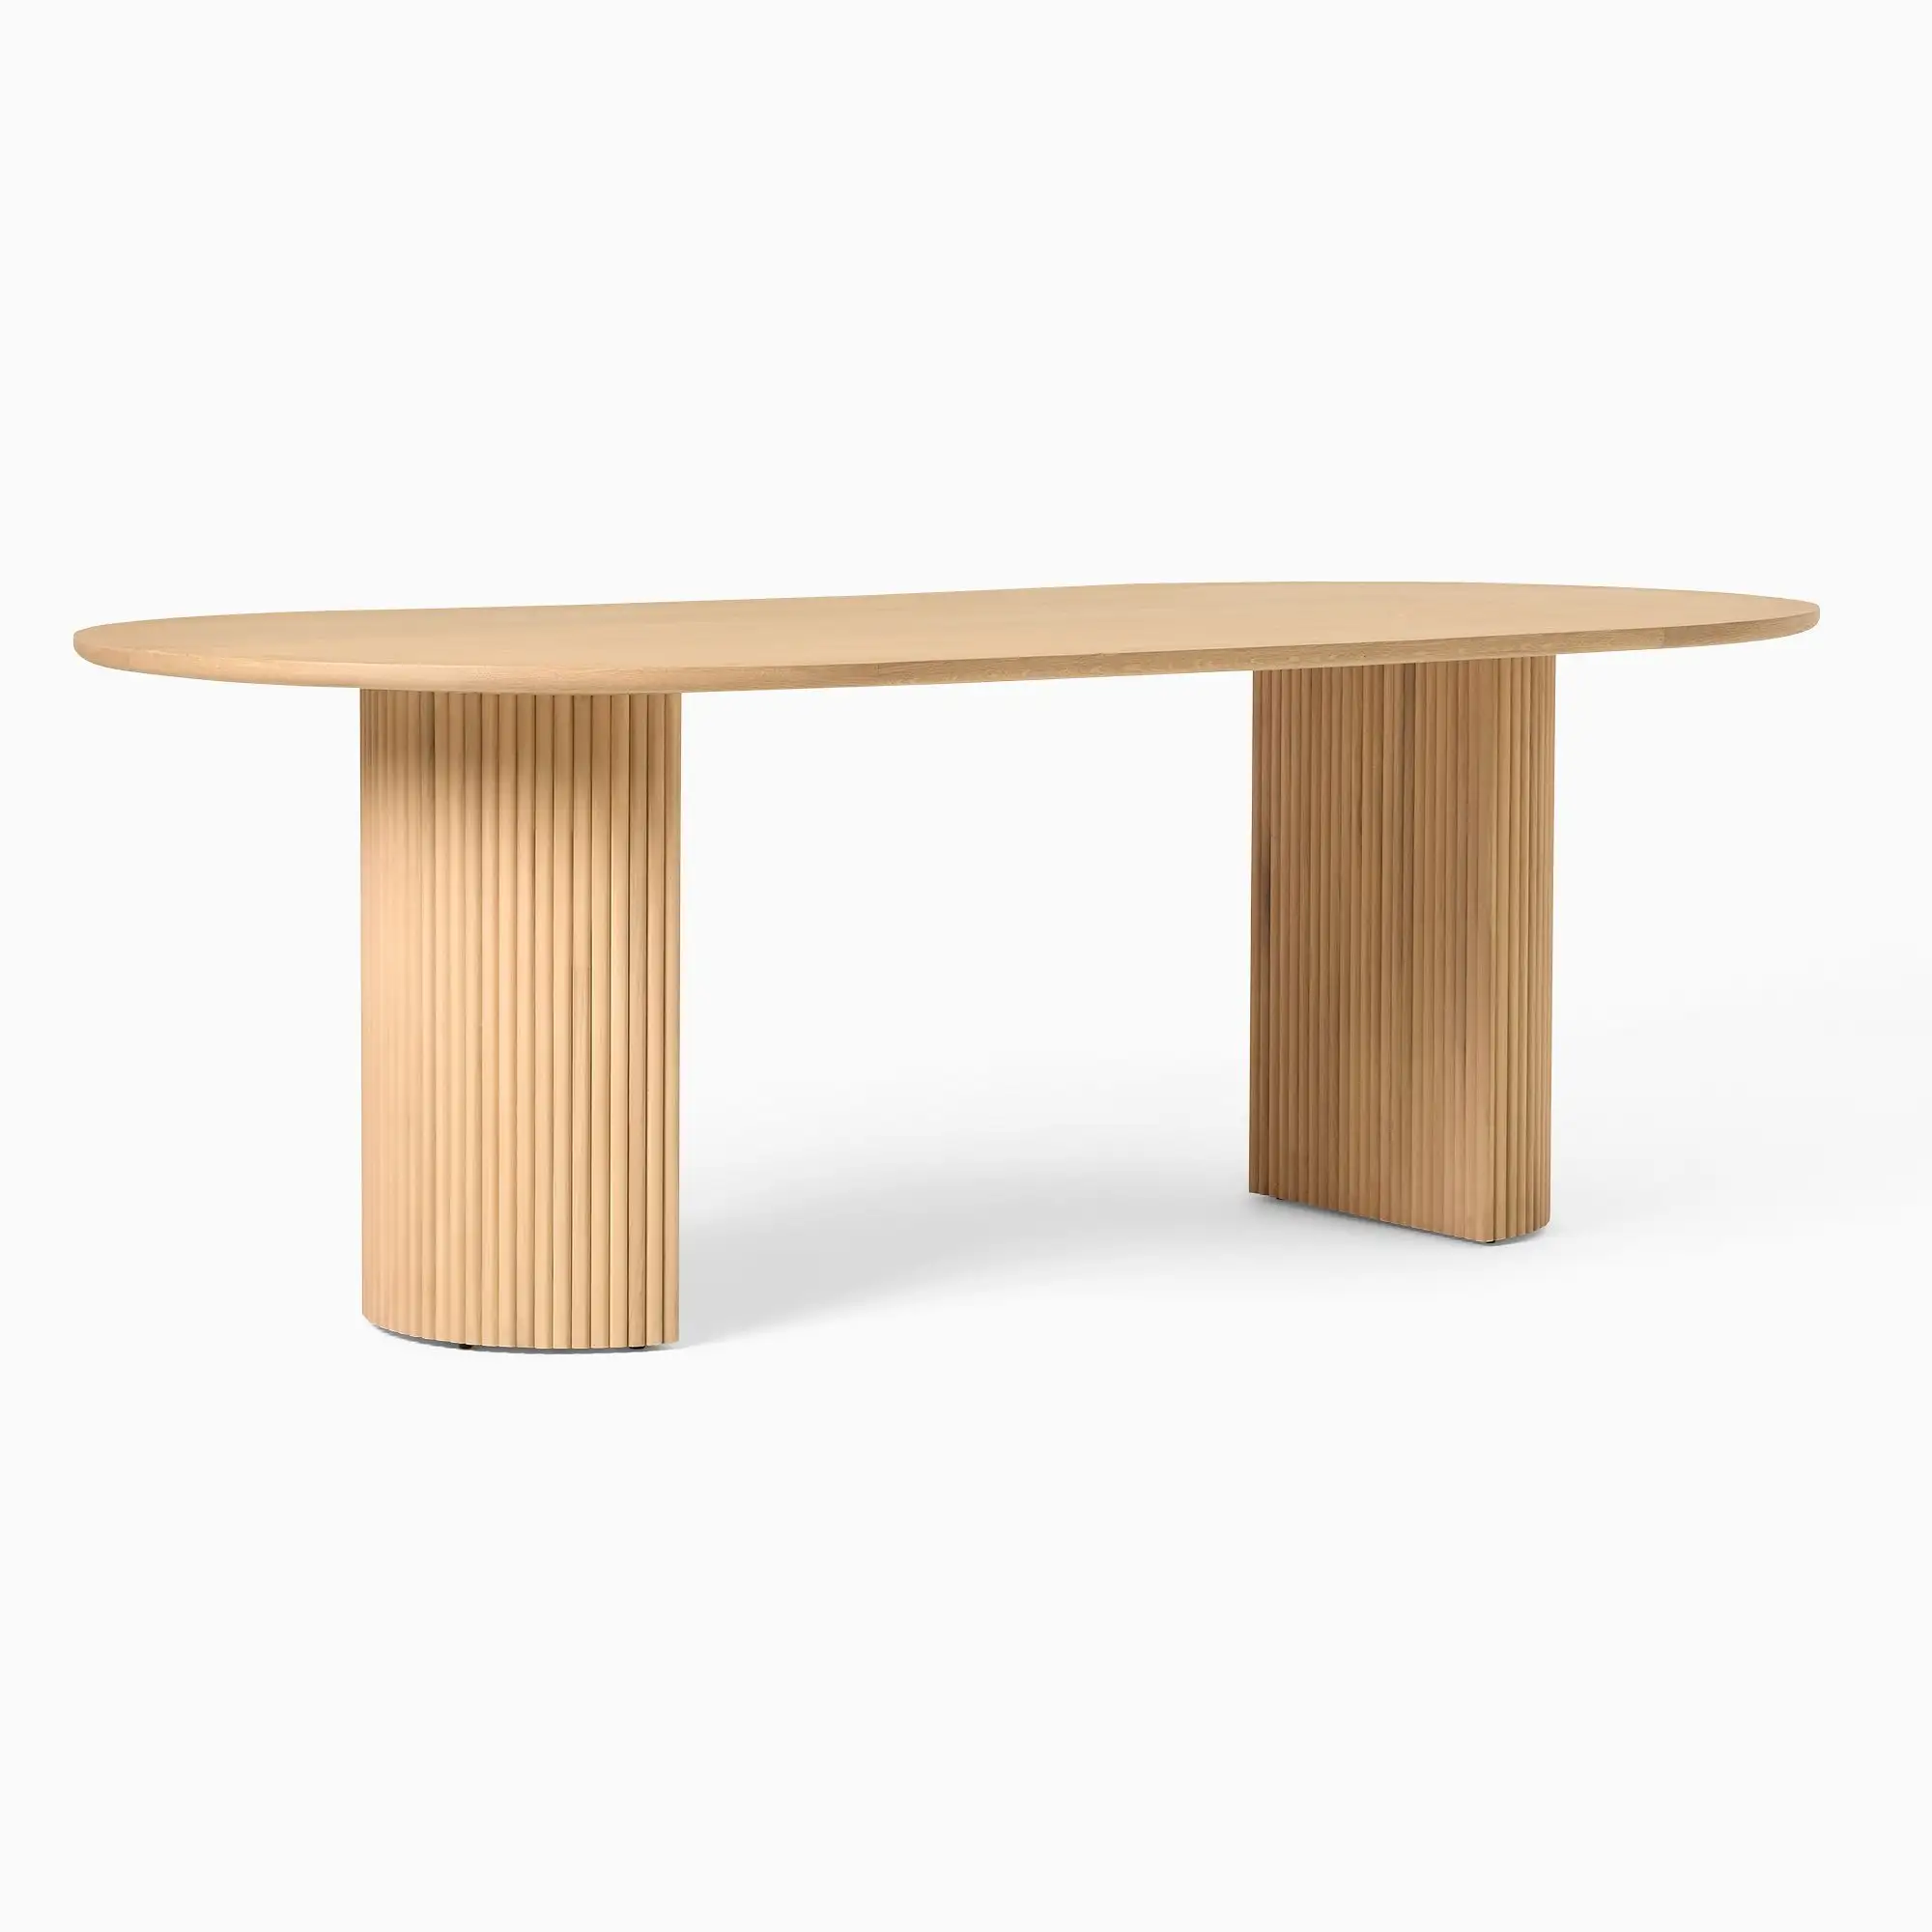 Современный обеденный стол из массива дерева овальной формы В Стиле Середины Века натуральный цвет тикового дерева домашний обеденный стол